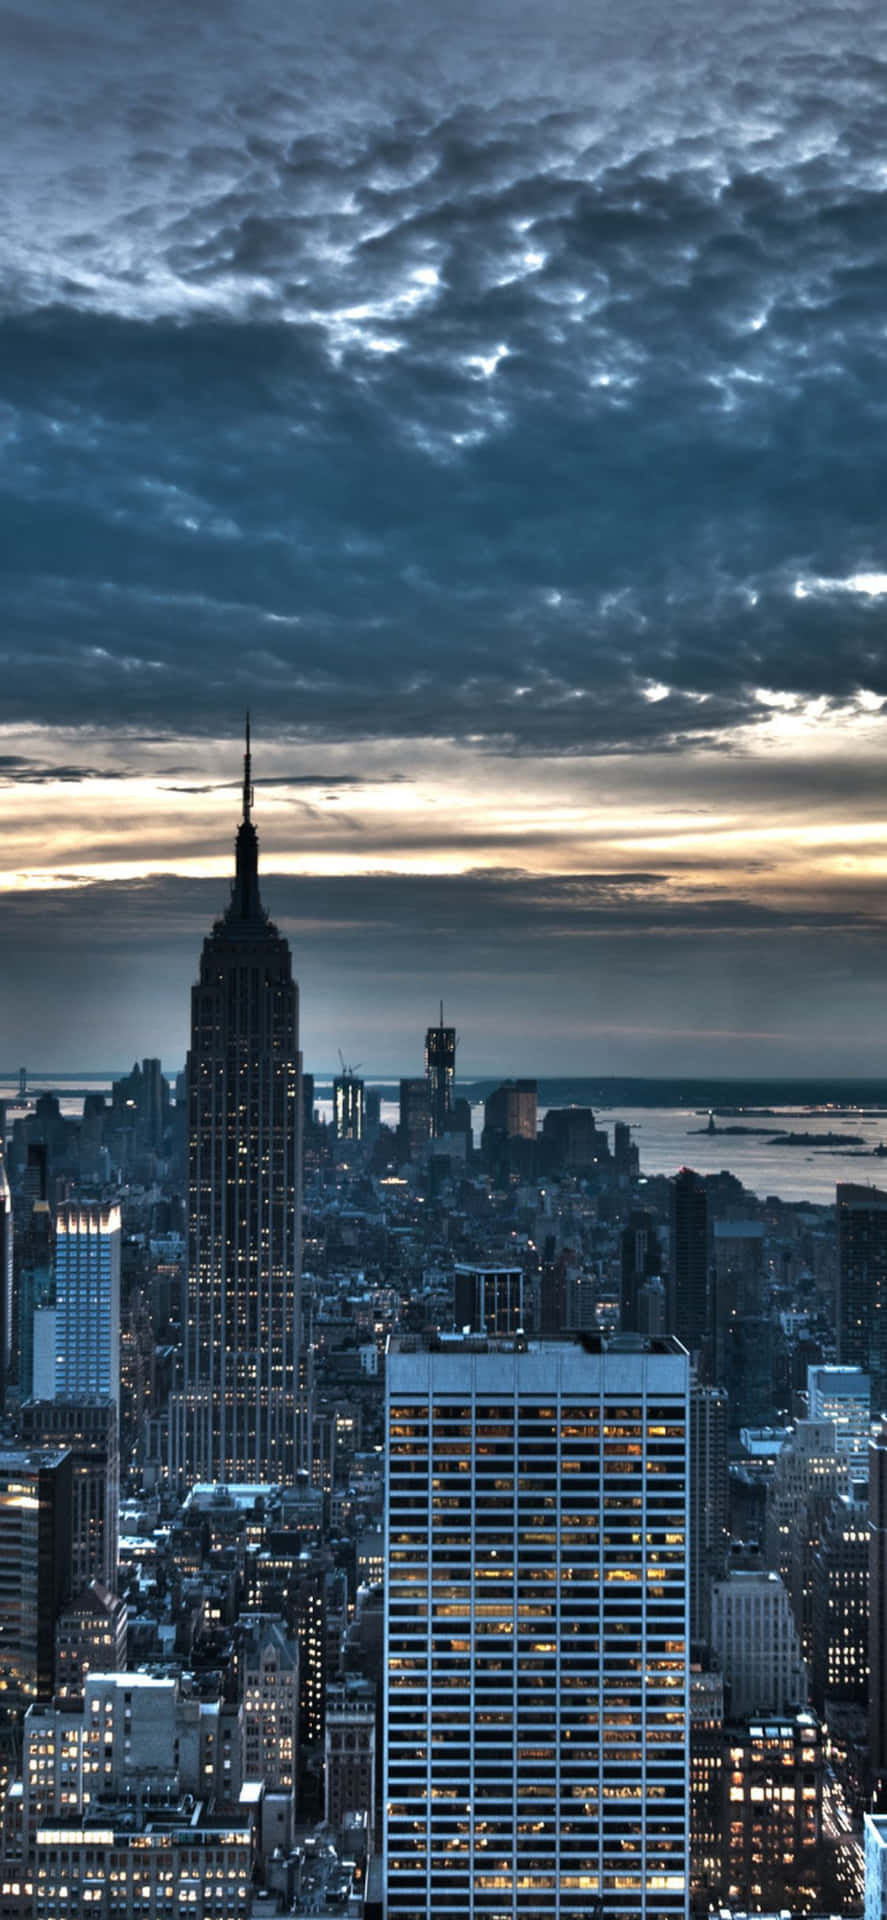 Magníficay Majestuosa Panorámica Nocturna De La Ciudad De Nueva York En Un Iphone Xs.